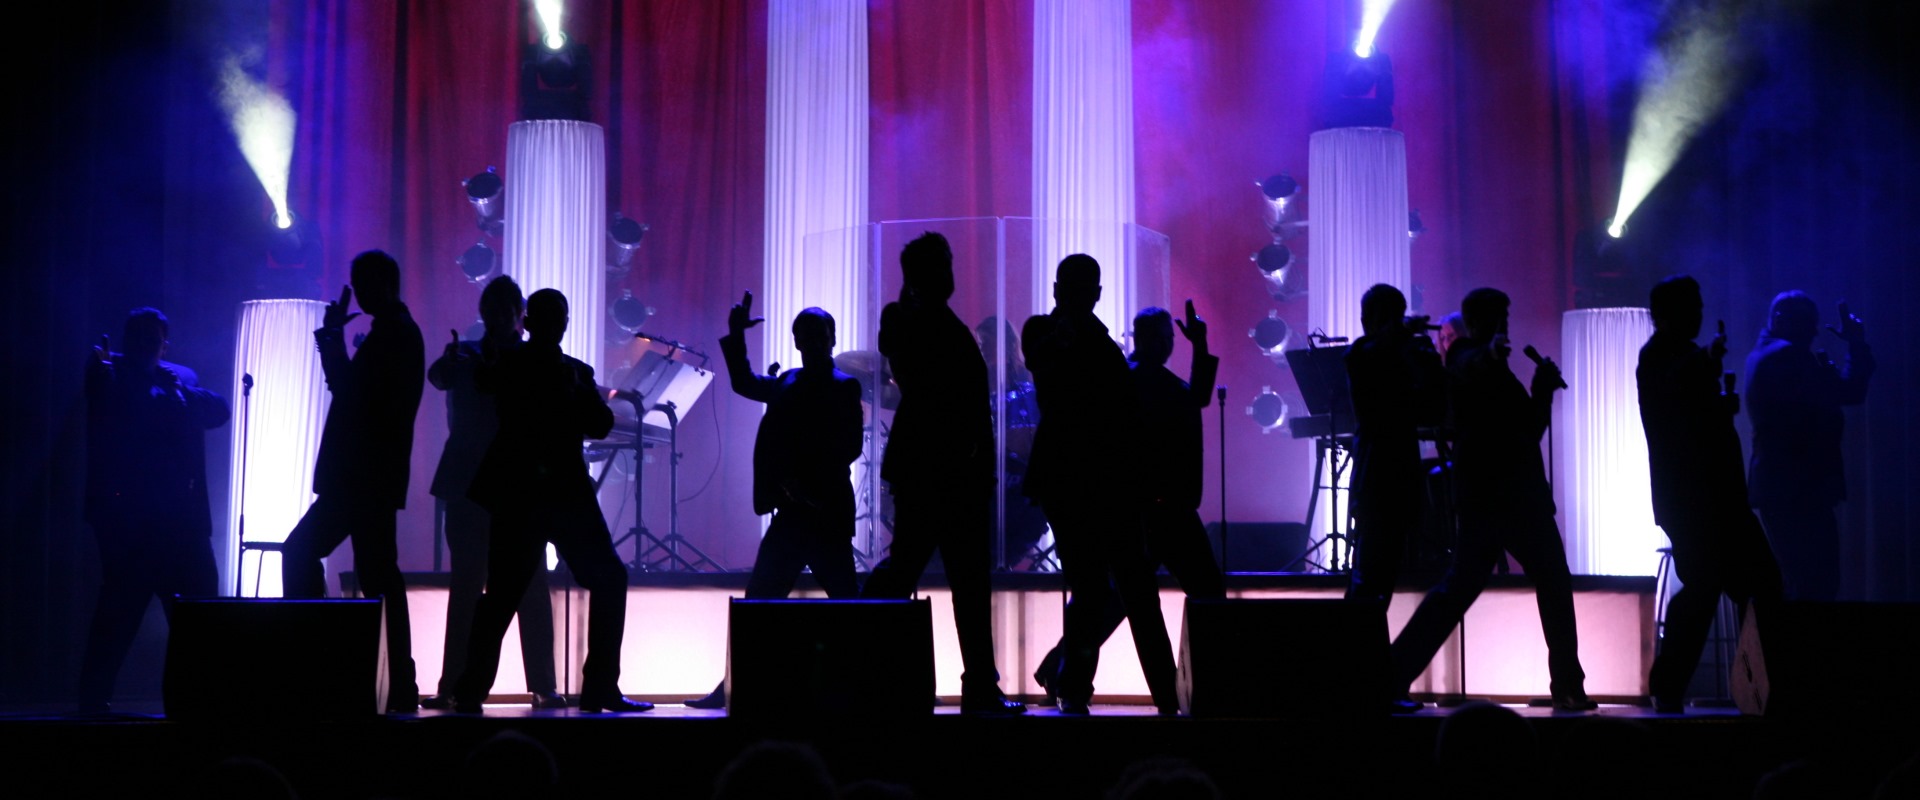 Die 12 Tenors tanzen auf der Bühne in buntem Licht.